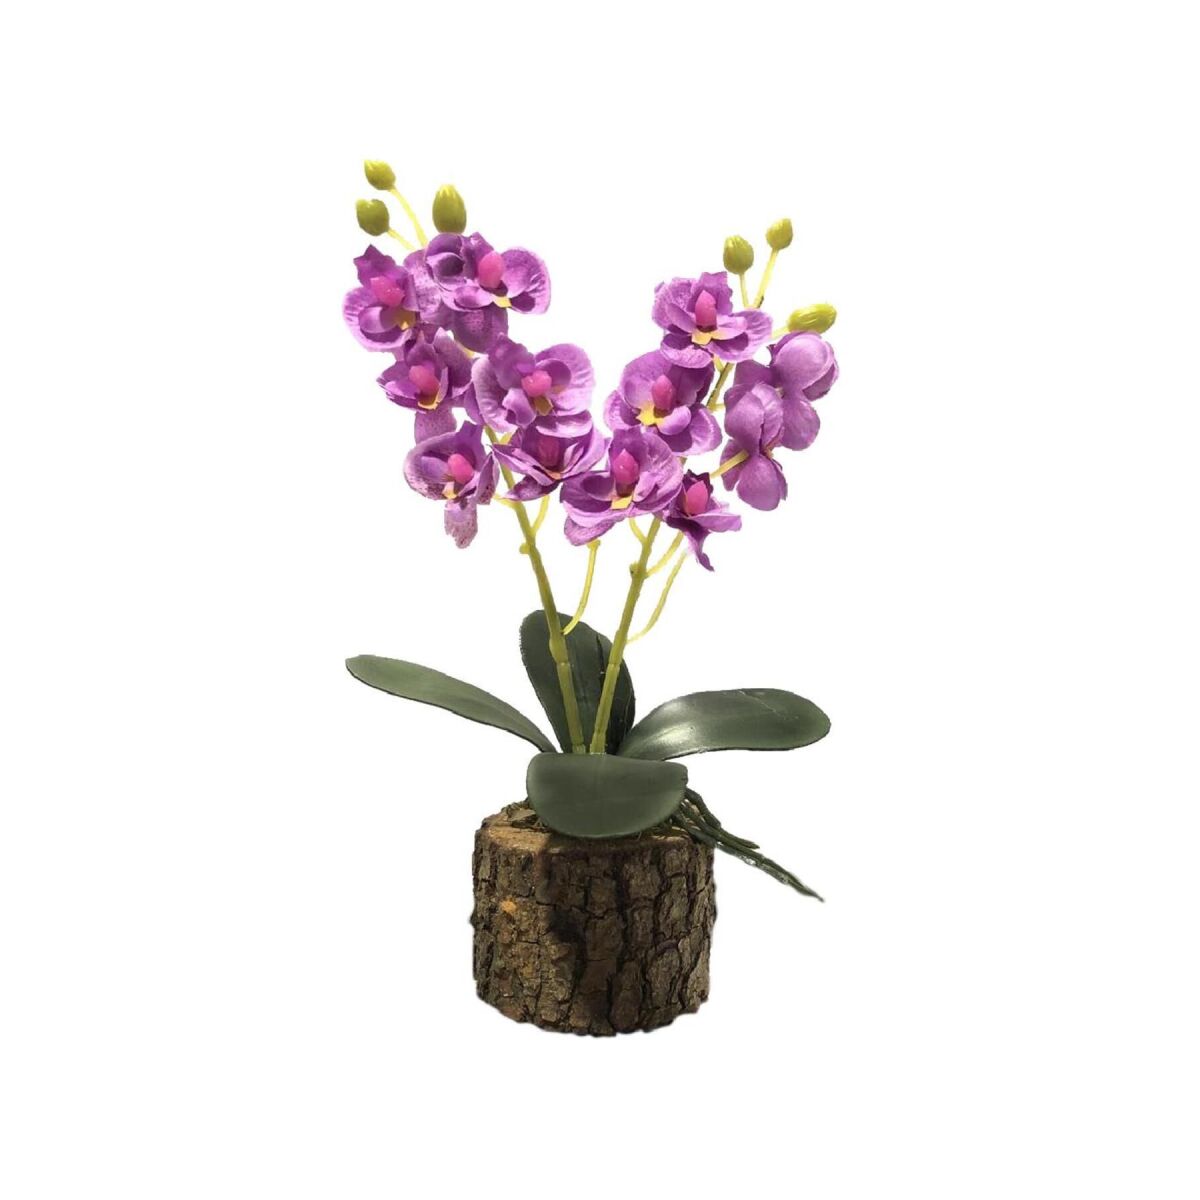 Yapay Çiçek Orkide Doğal Kütük Saksı Da Hediyelik Lila 25Cm